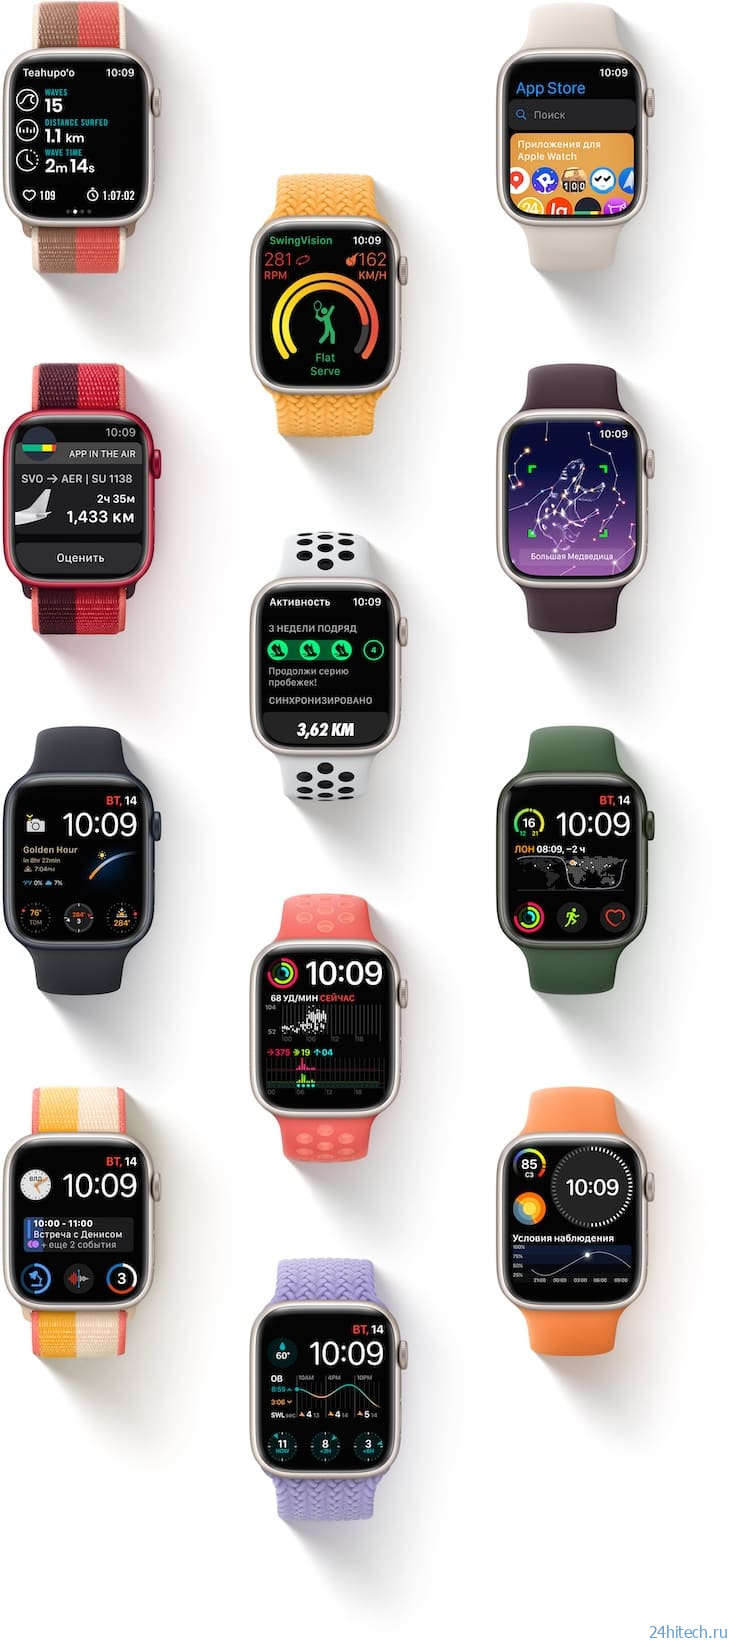 Обзор Apple Watch Series 7: что нового, характеристики, цена в России